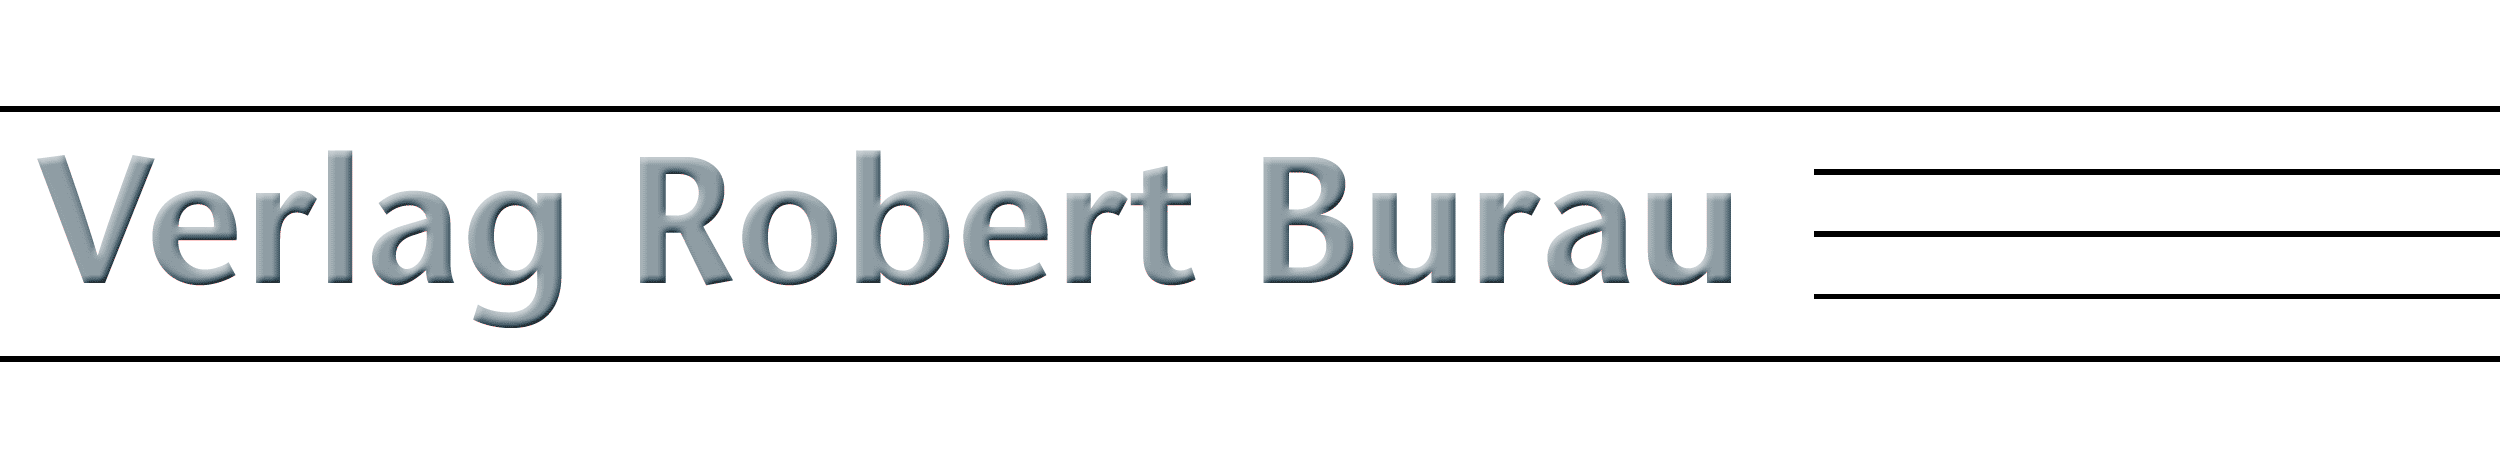 BMV Verlag Robert Burau